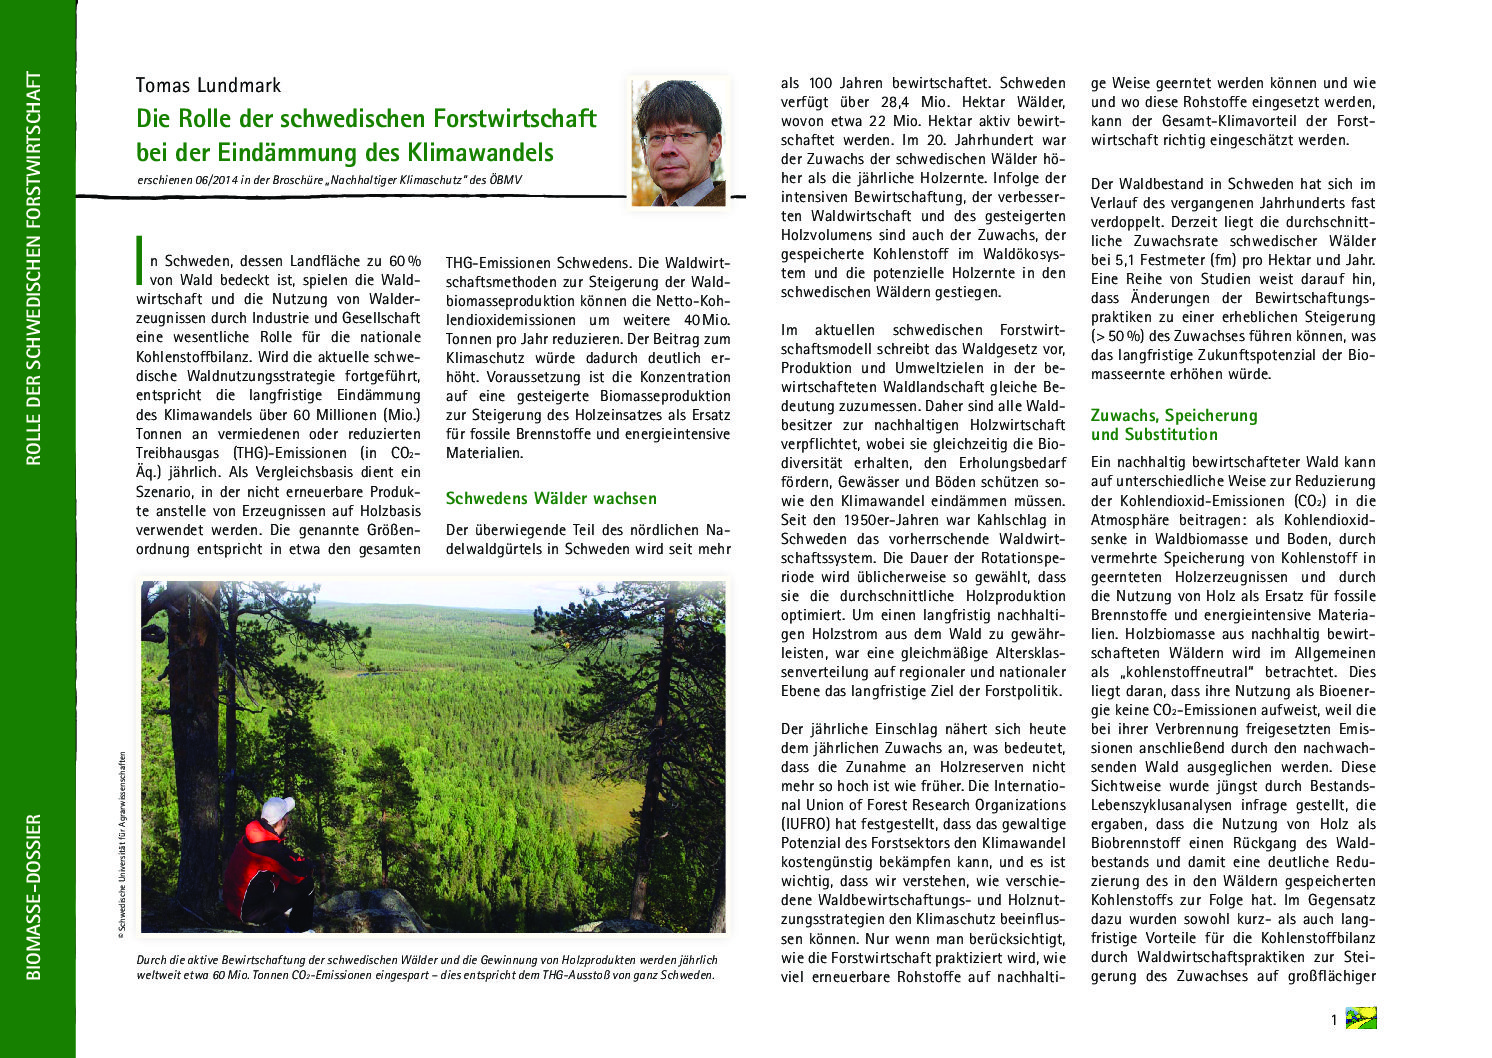 Die Rolle der schwedischen Forstwirtschaft bei der Eindämmung des Klimawandels